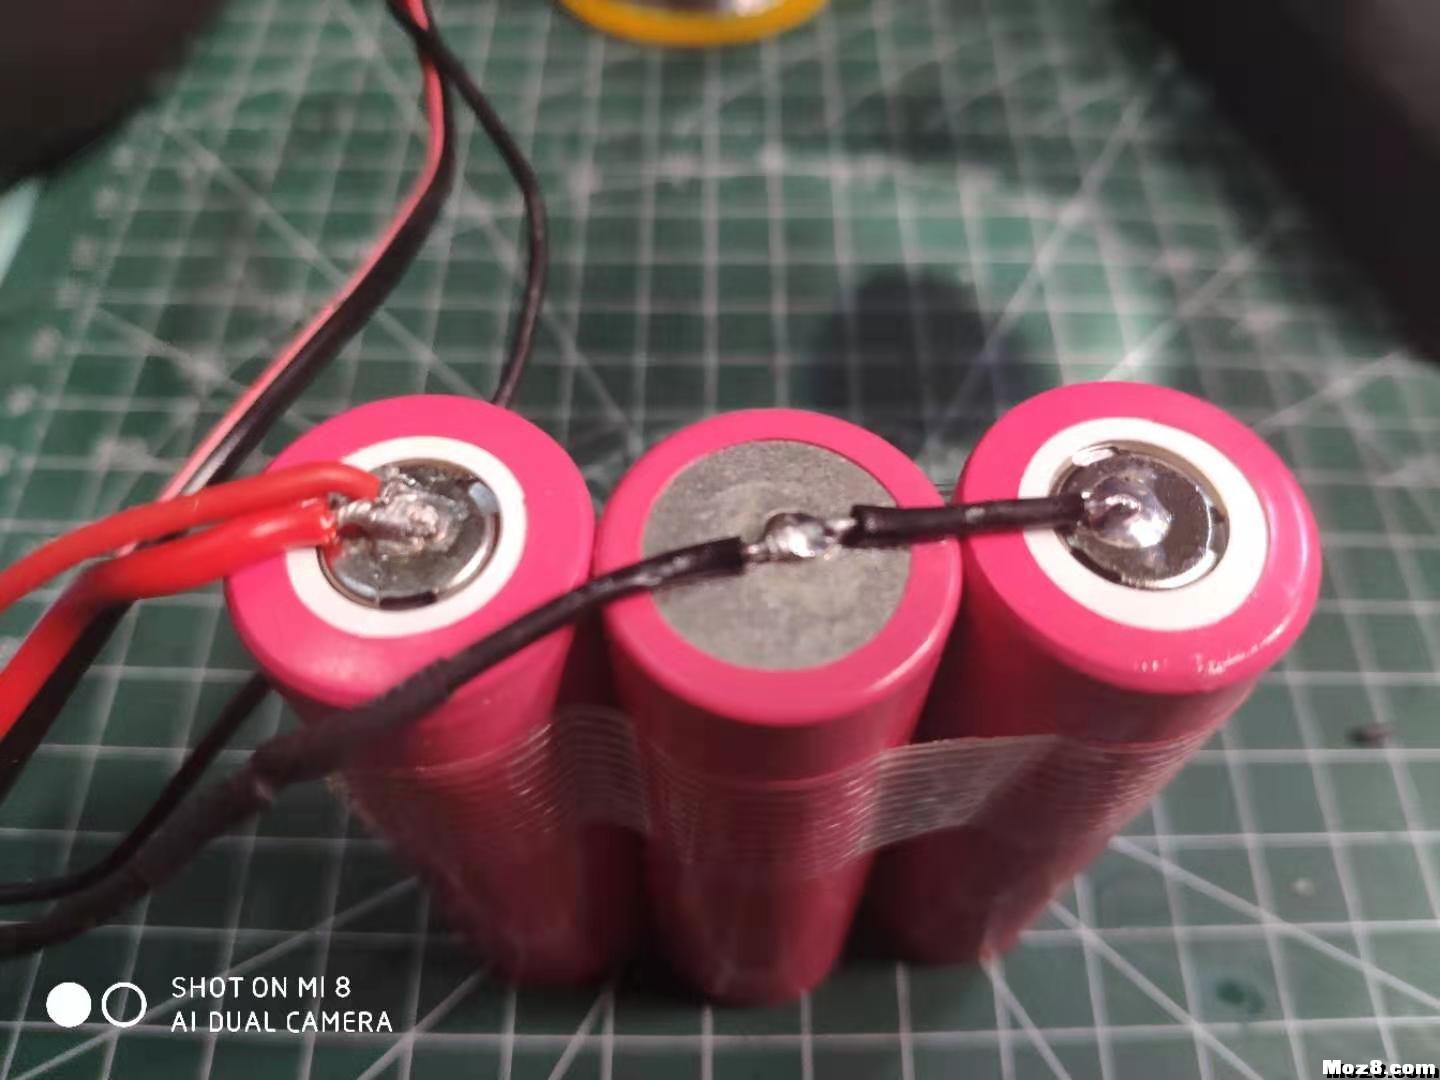 自制遥控模型电池组的方法 航模,模型,电池 作者:summer474cn 1905 